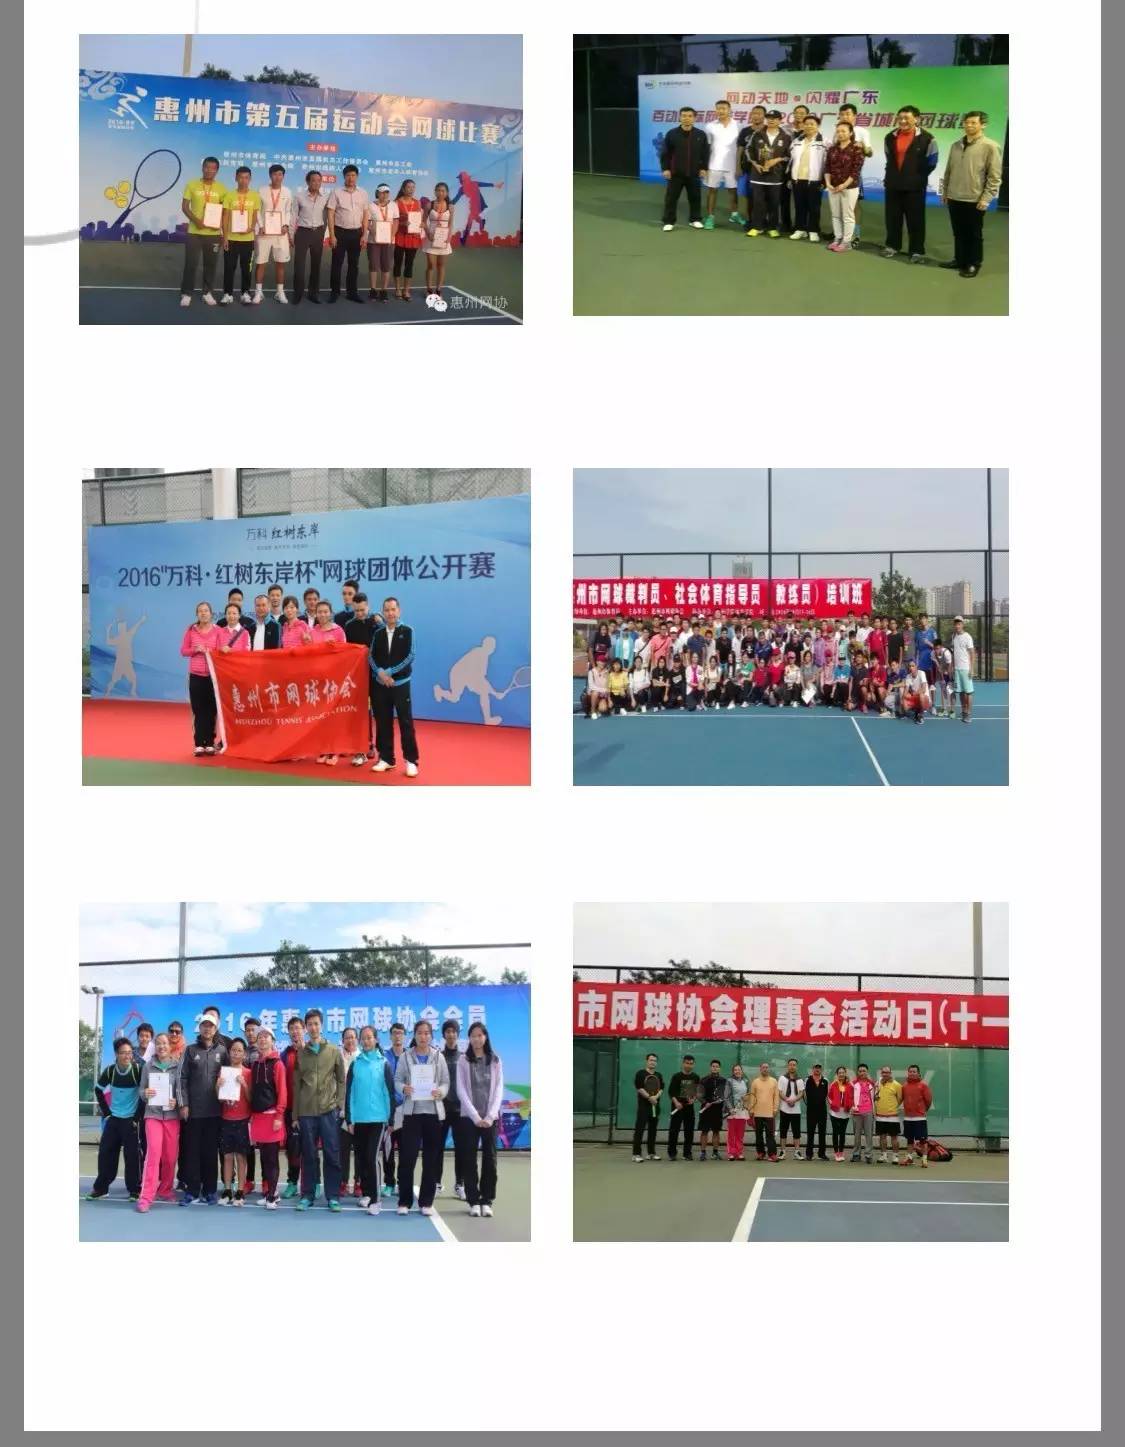 惠州市网球协会邀您合作共赢互惠共赢合作发展(组图)